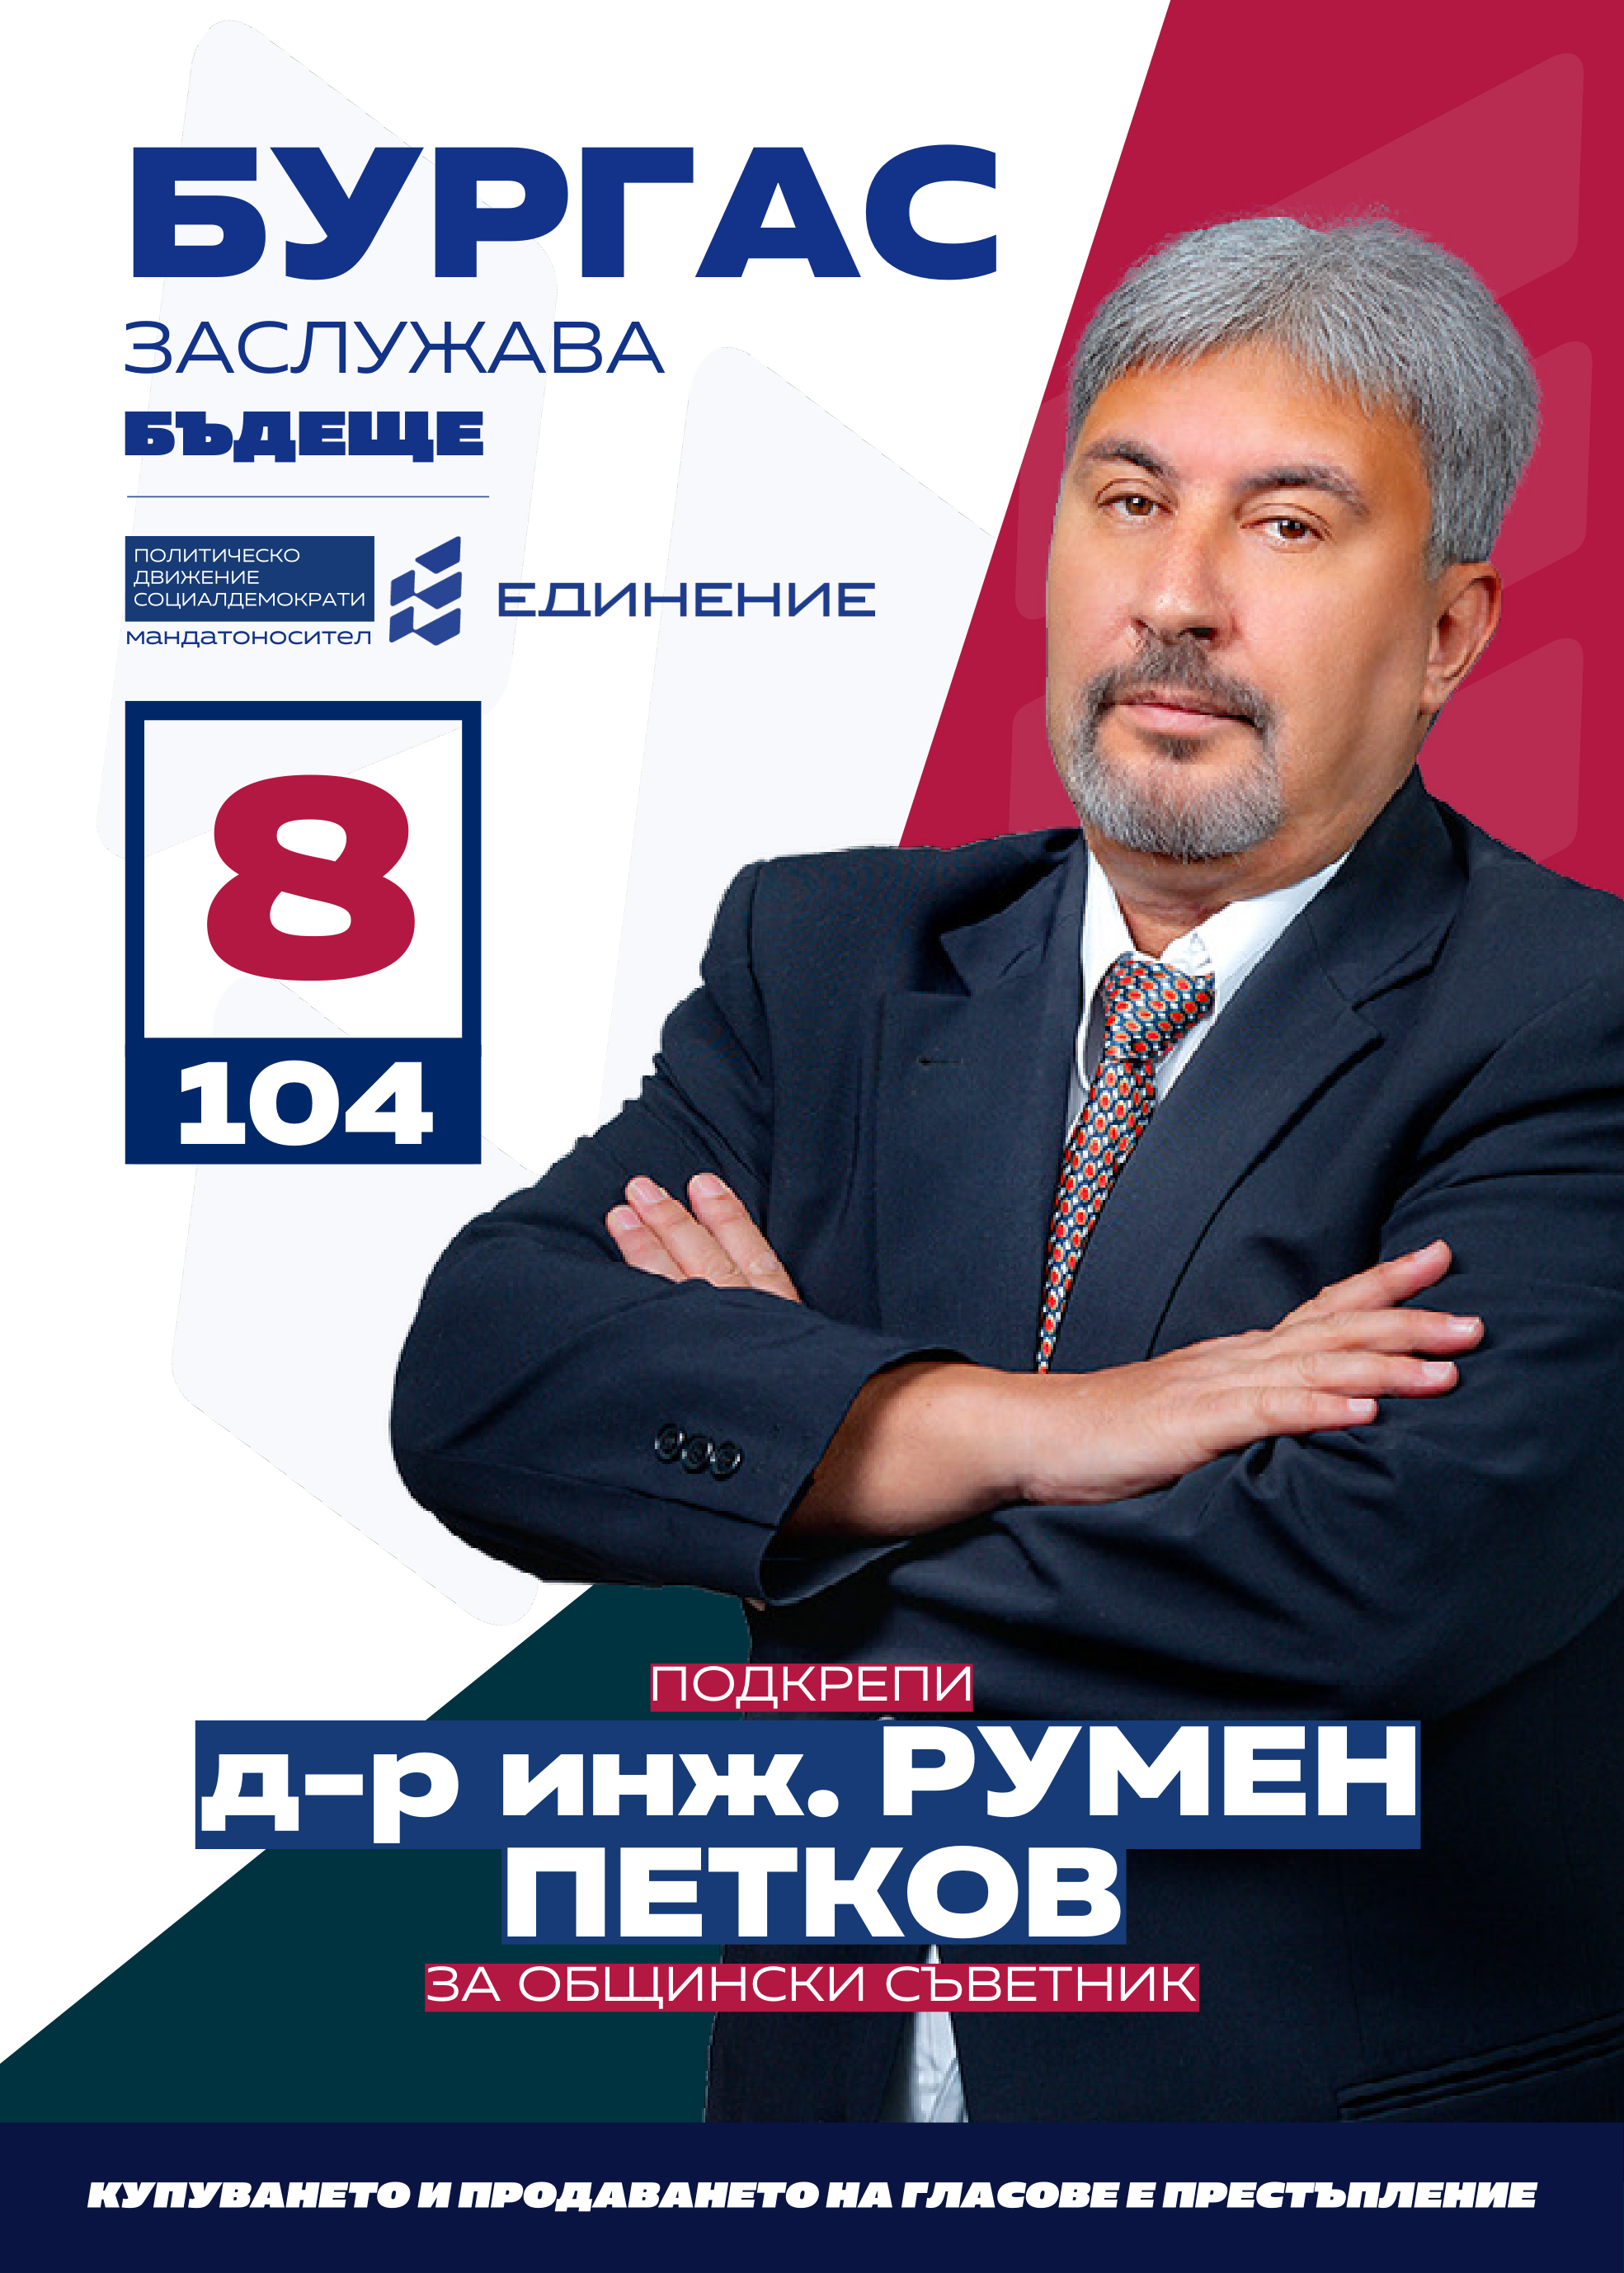 Румен Петков – доктор по история писател
Кандидатът за общински съветник